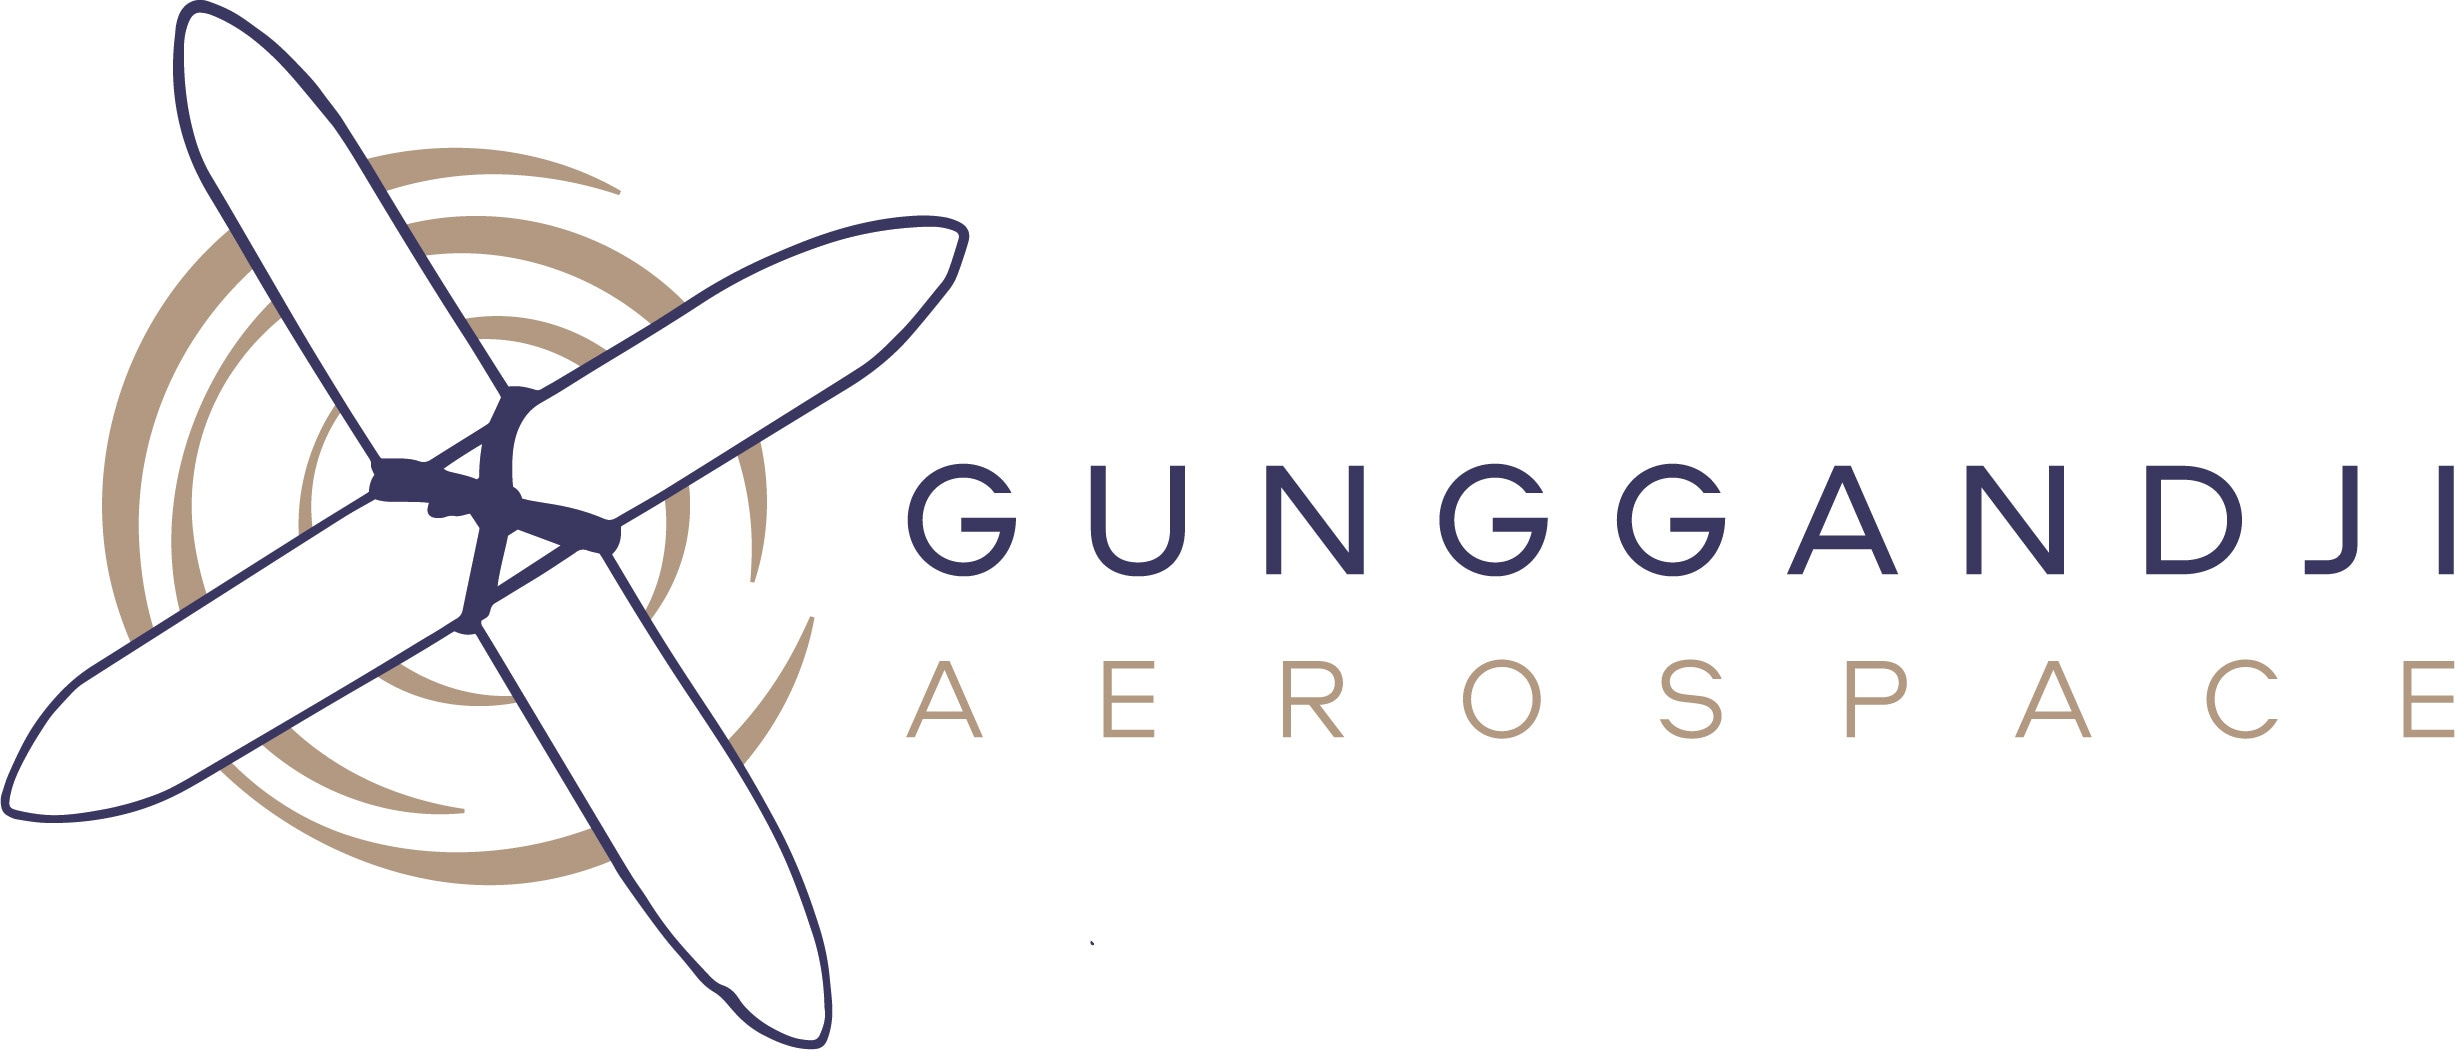 Gunggandji Aerospace